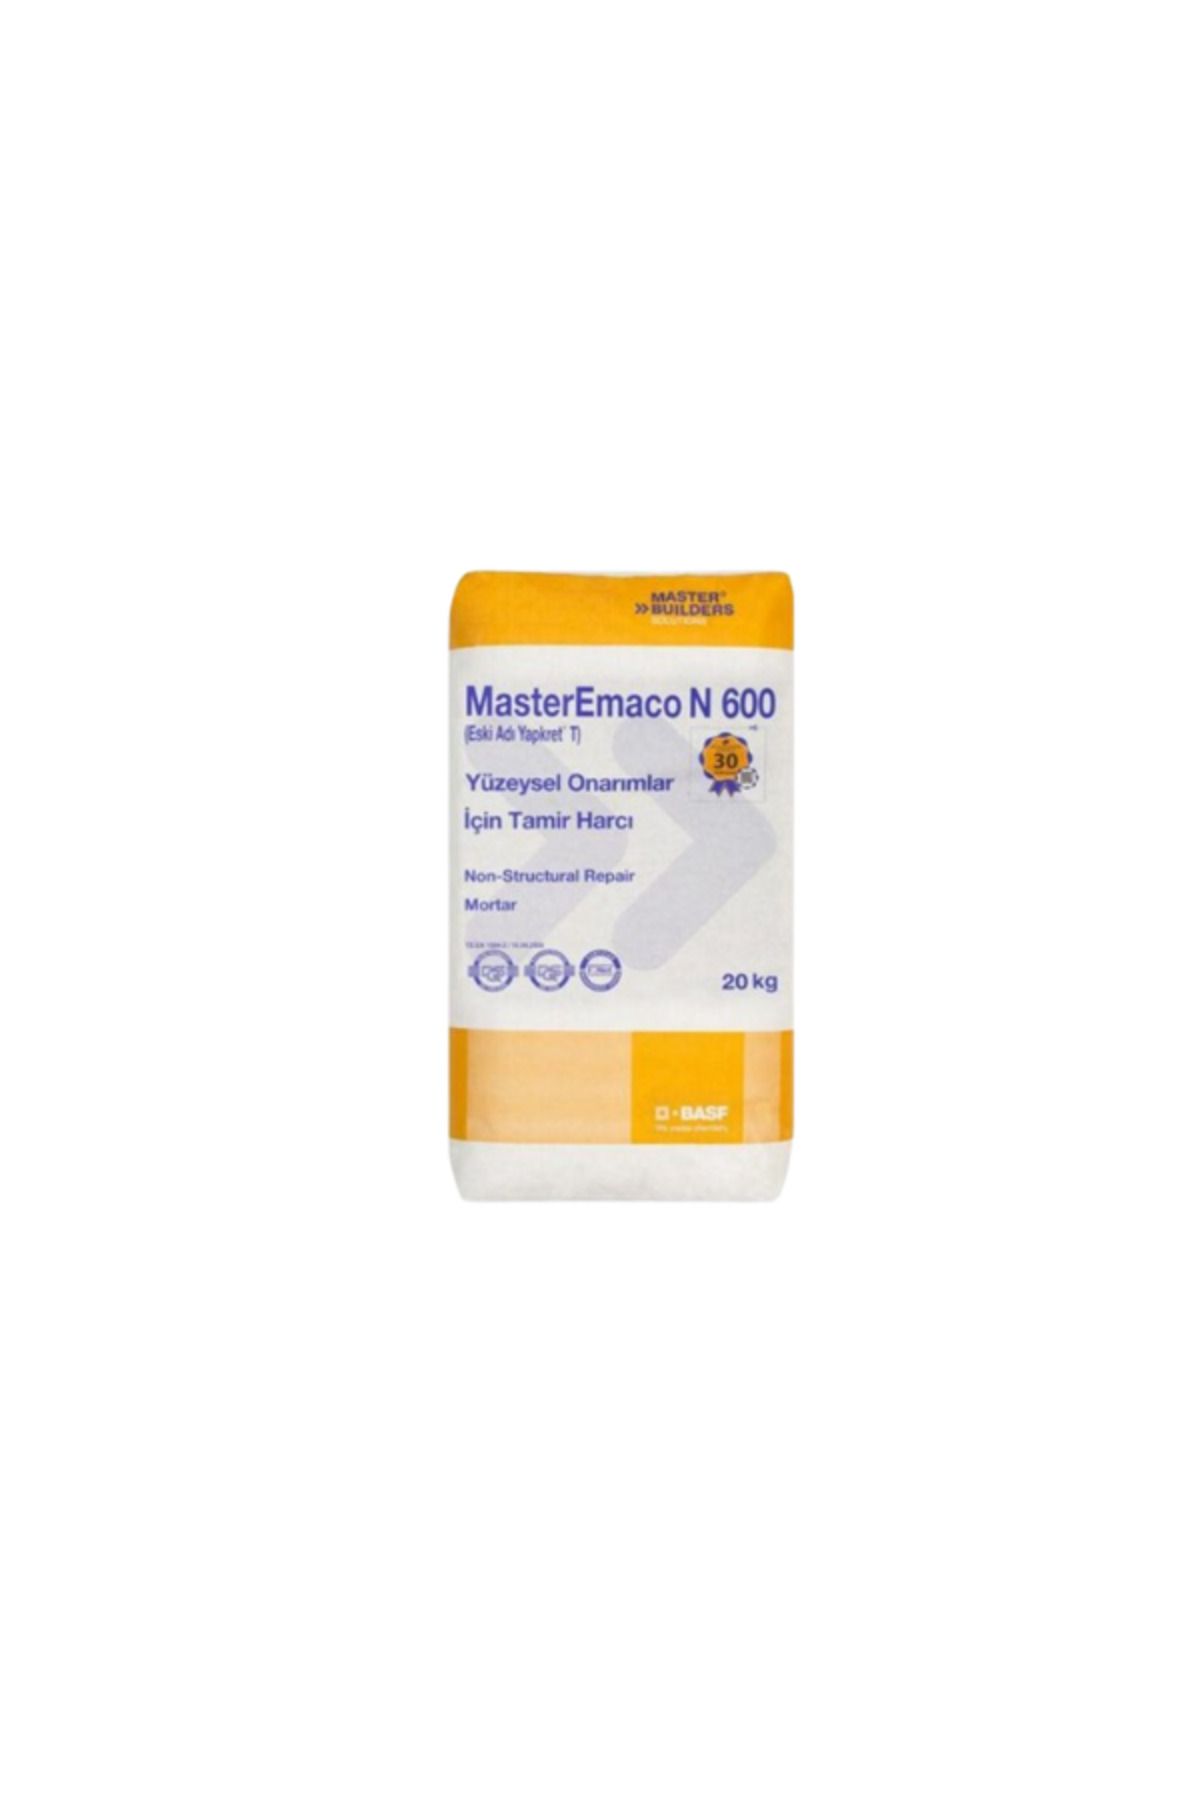 Sika MasterEmaco N 600 ® Yüzeysel Onarımlar İçin Tamir Harcı